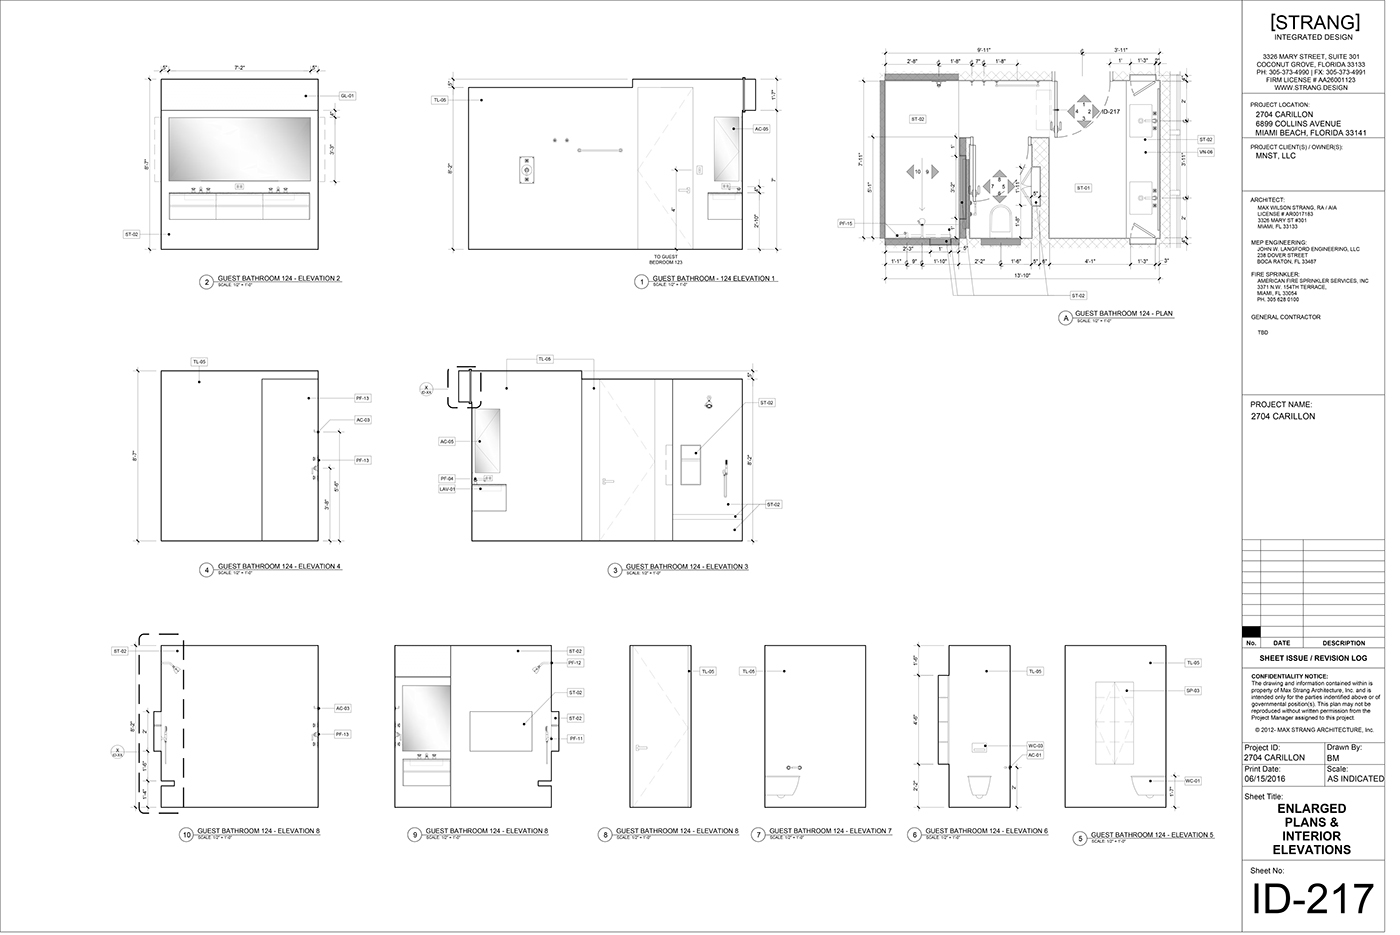 integrated design architecture interior design 